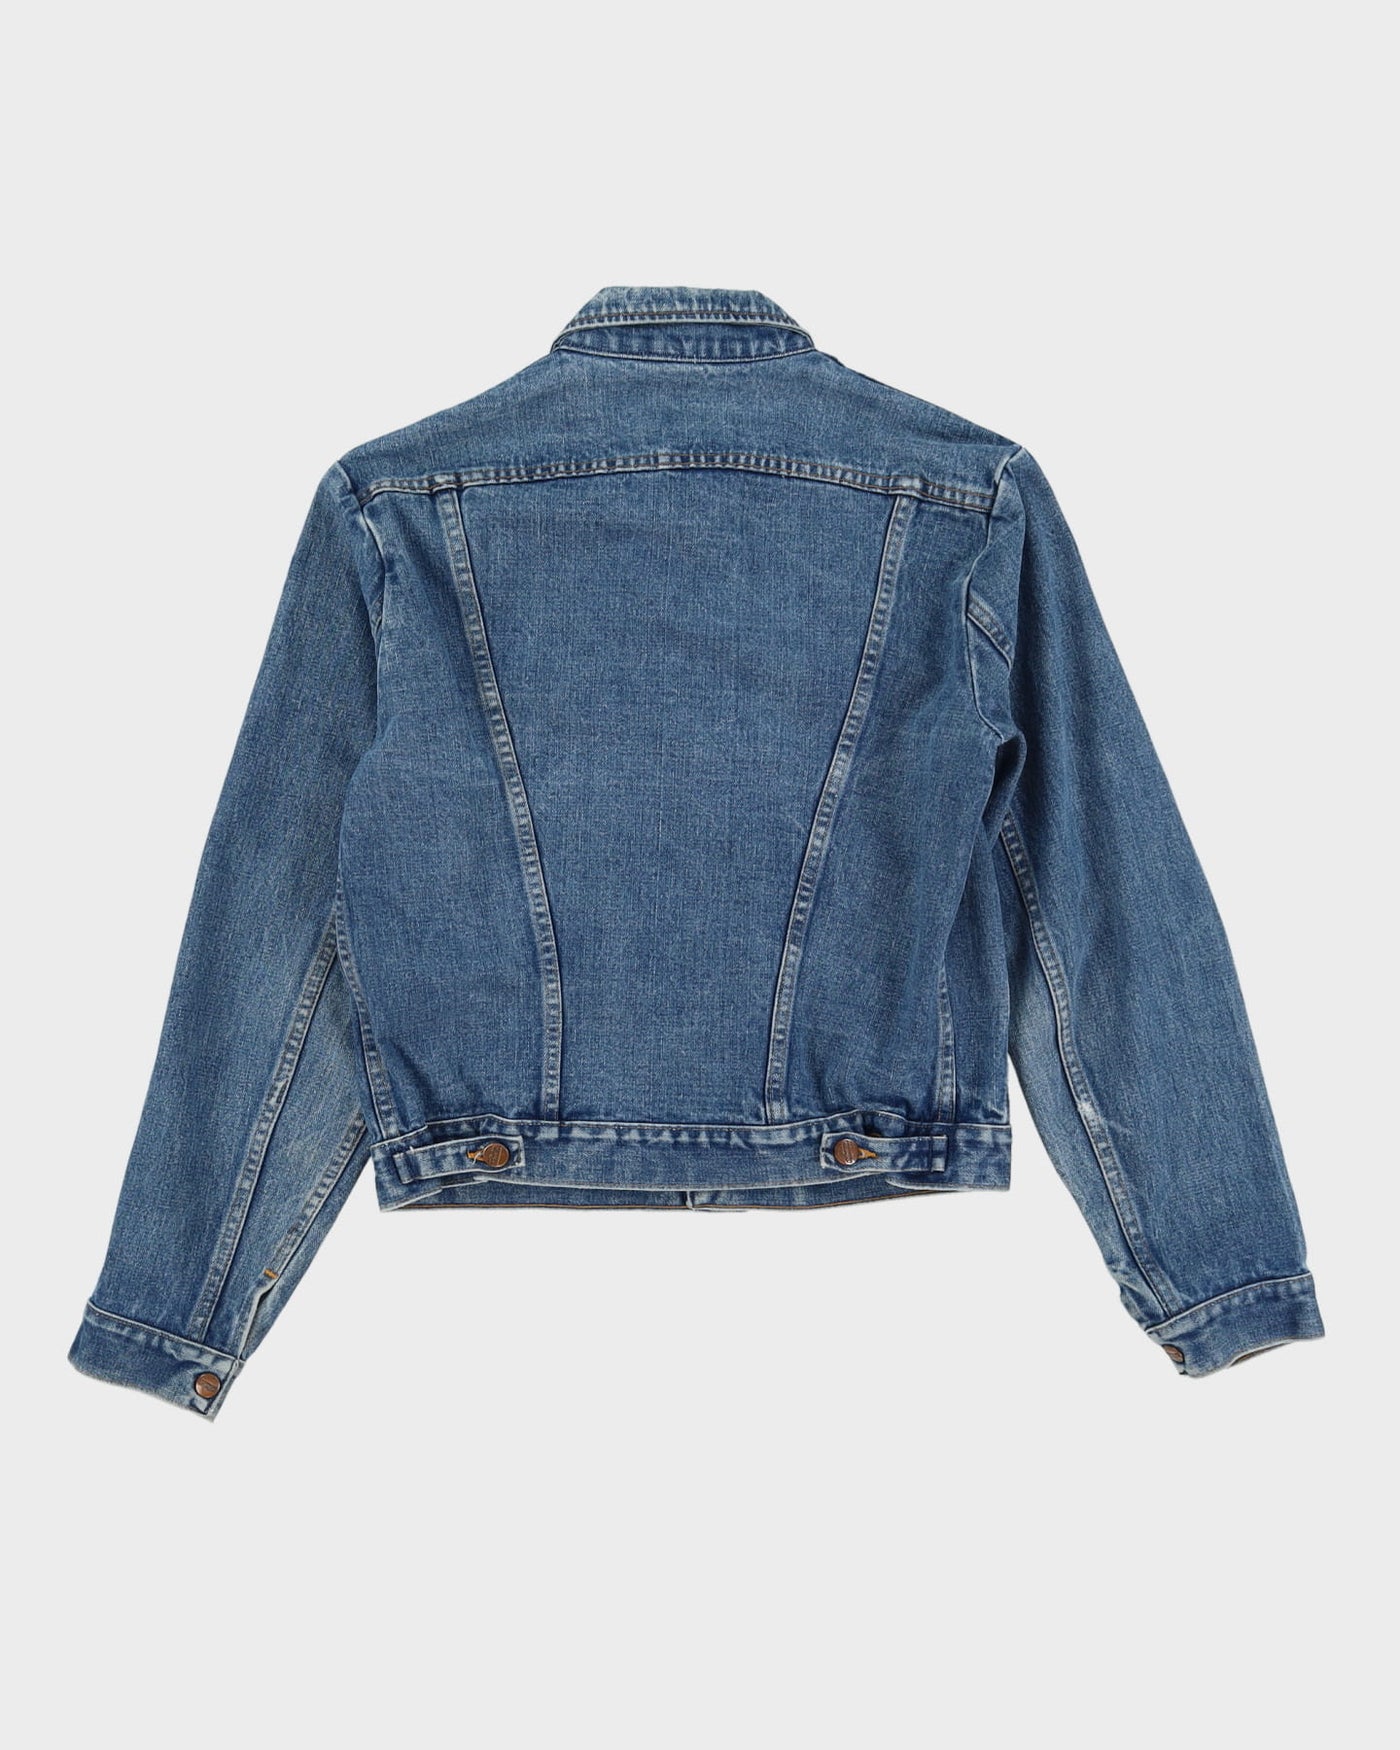 Vintage 70s Wrangler Blue Denim Jacket - L